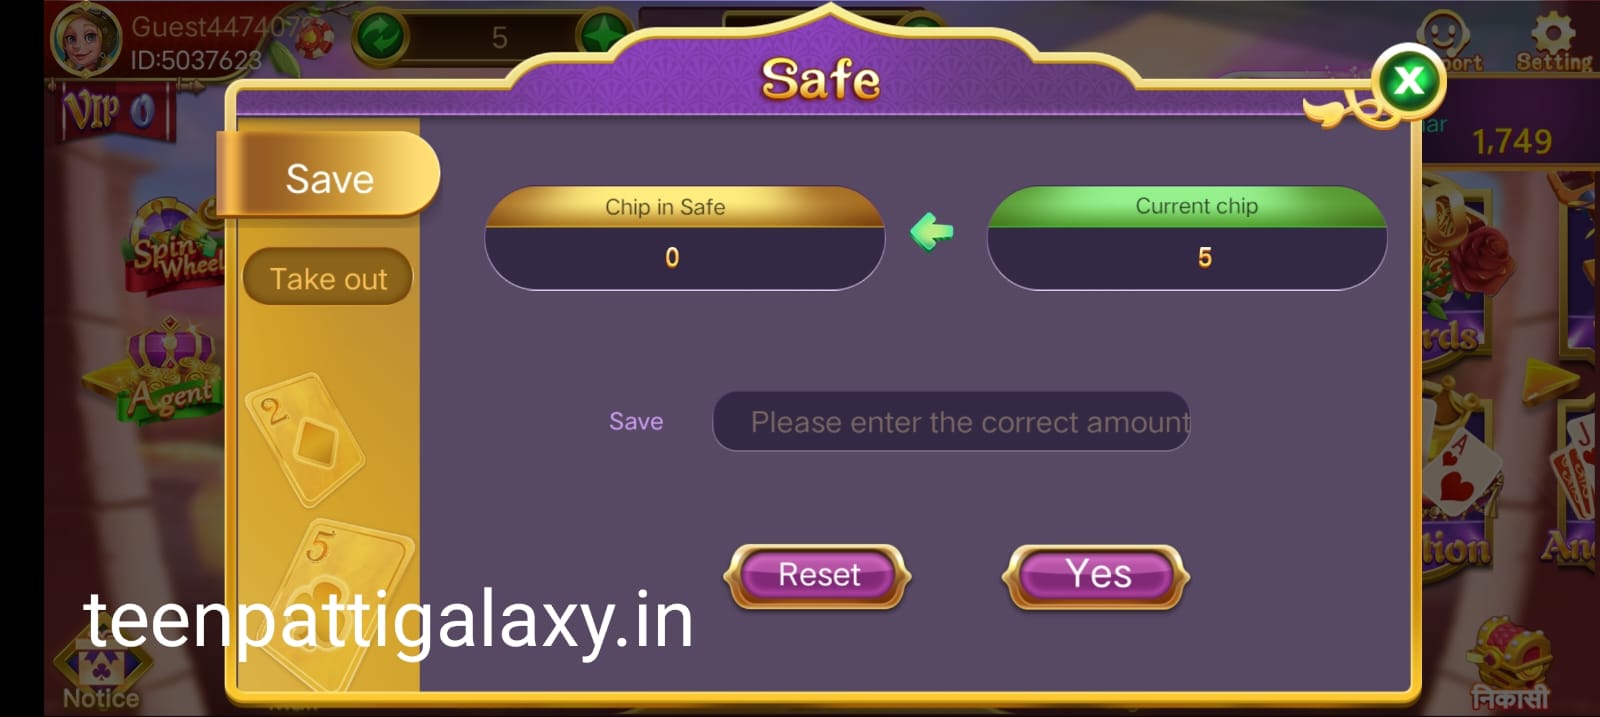 Safe Button Program In Rummy Go App